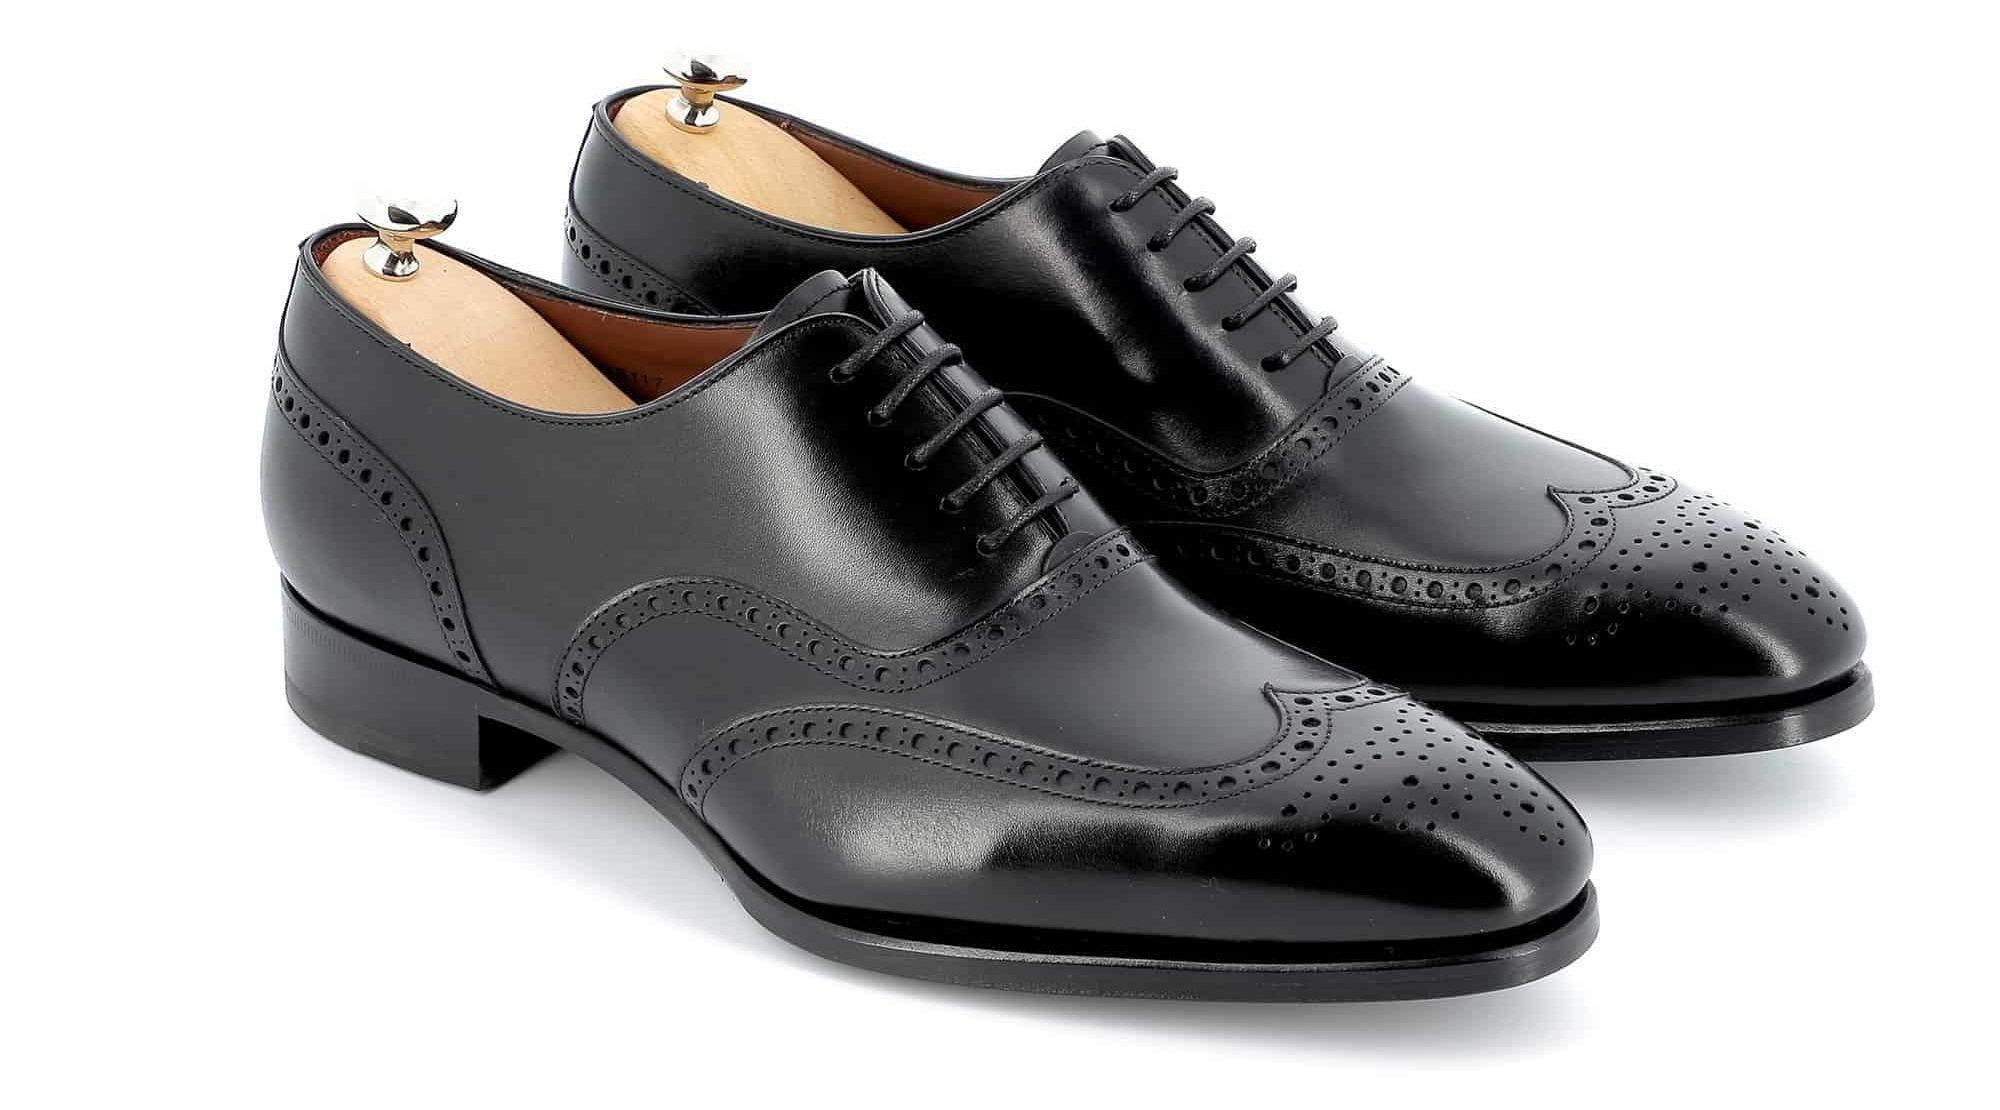 Chaussures Richelieu Charles cuir noir semelles cuir